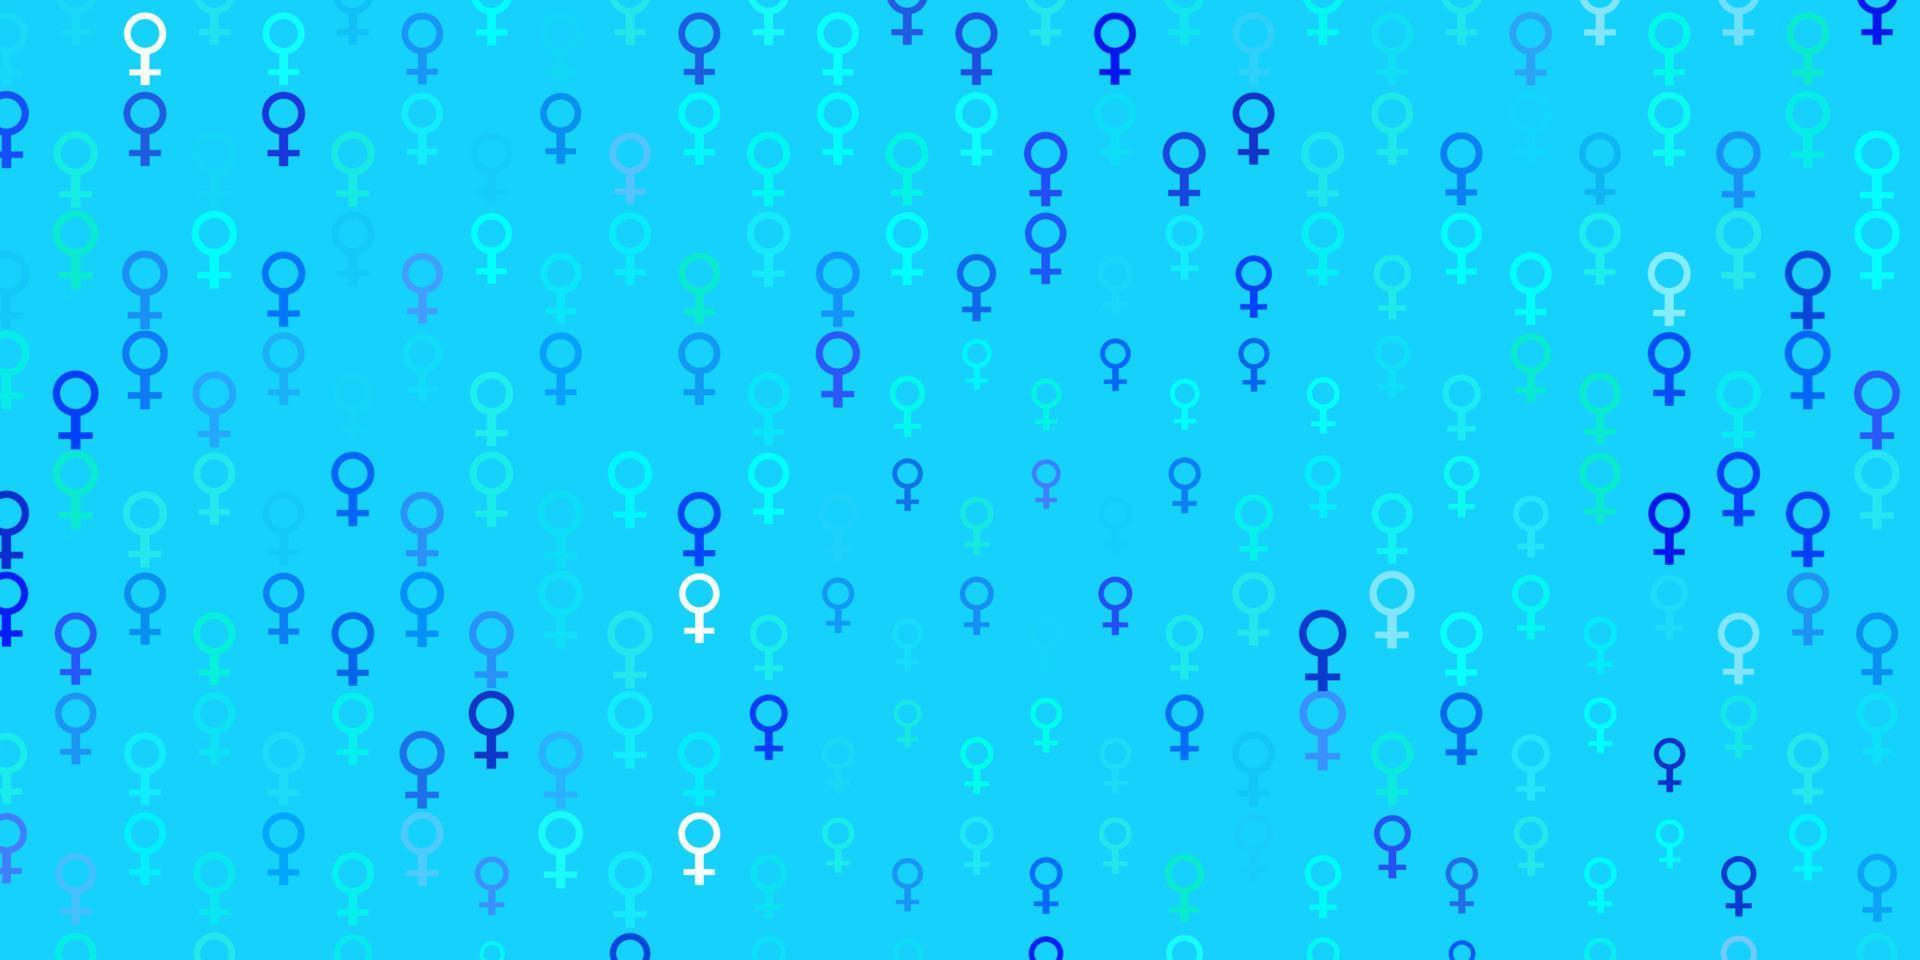 sfondo vettoriale azzurro con simboli di potere delle donne.